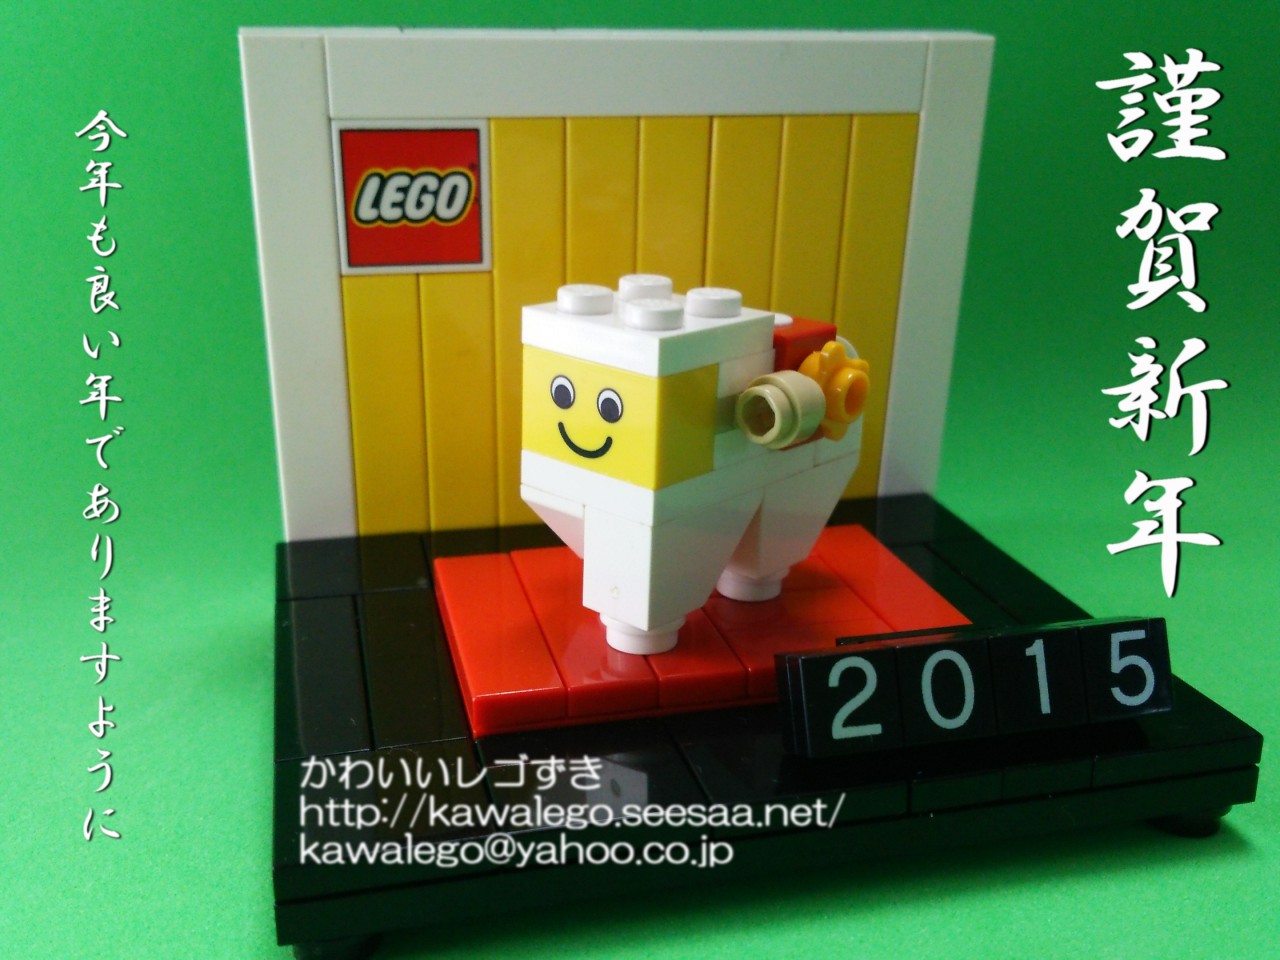 2015年 明けましておめでとうございます - レゴ年賀状「未」